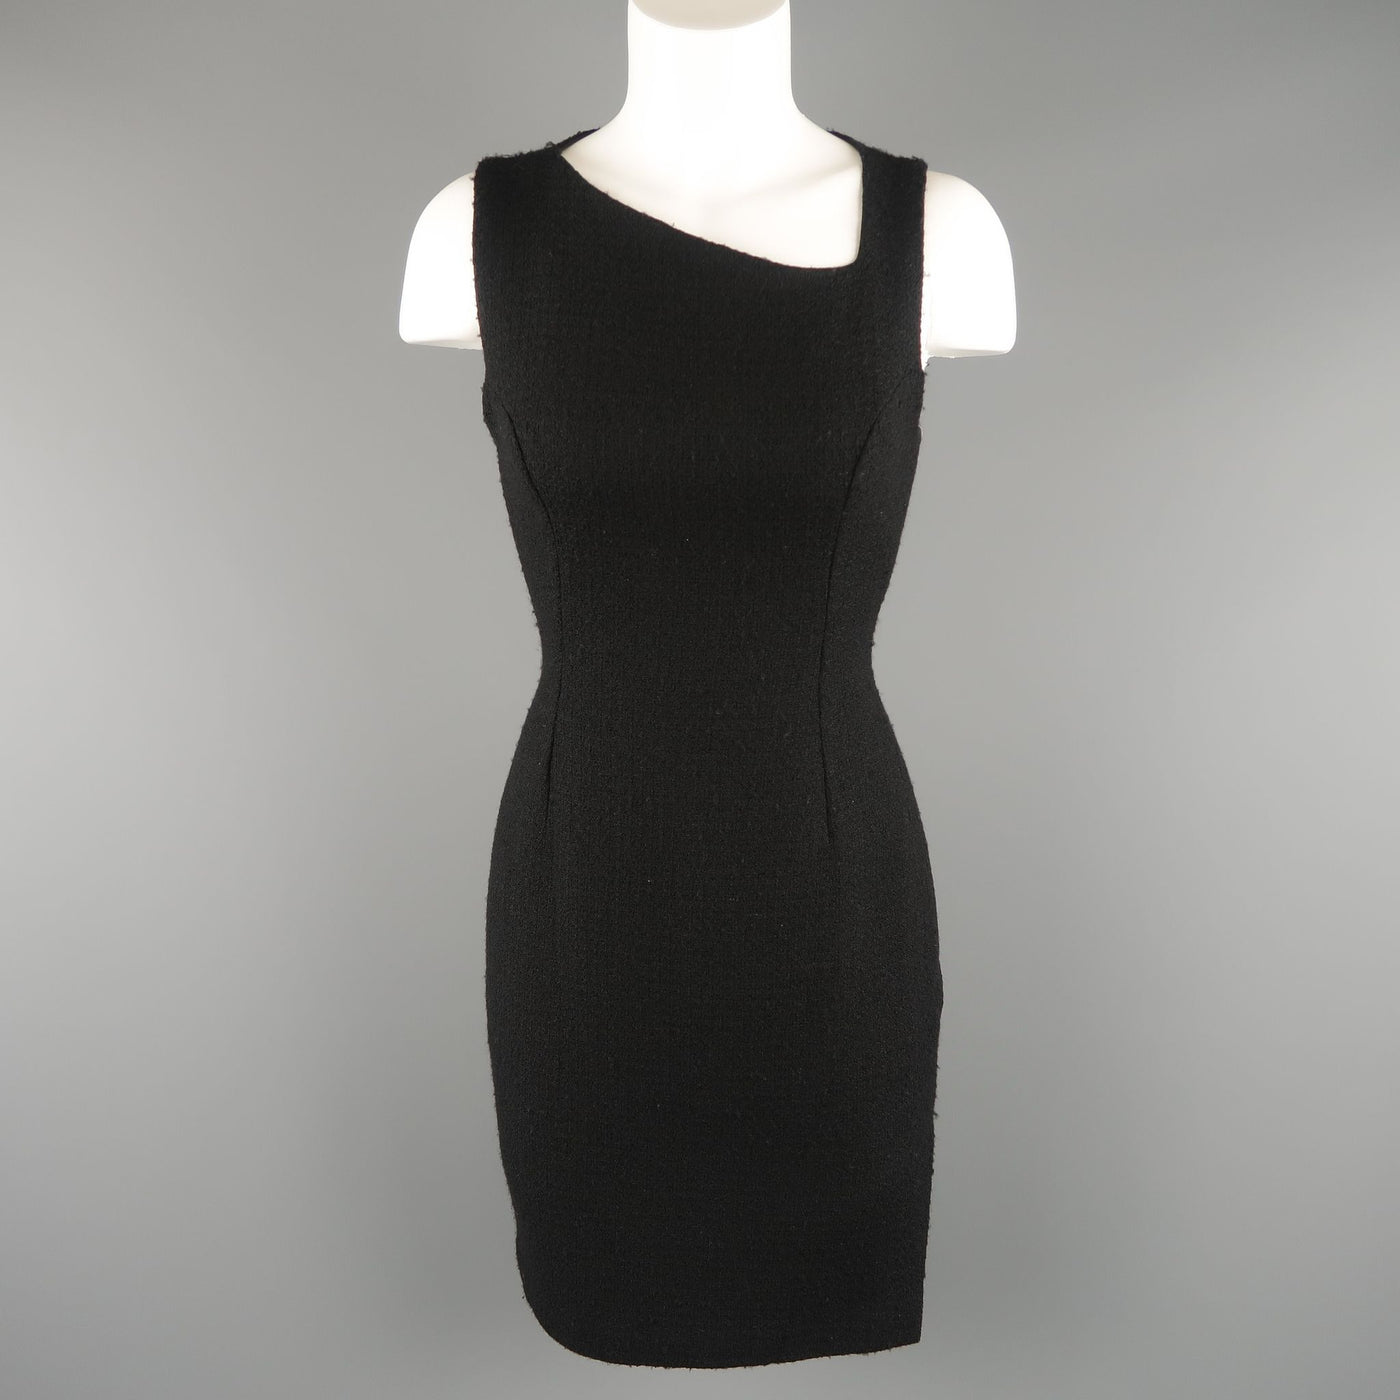 VERSUS by GIANNI VERSACE Size 4 Black Wool Blend Tweed Asymmetrical Dress